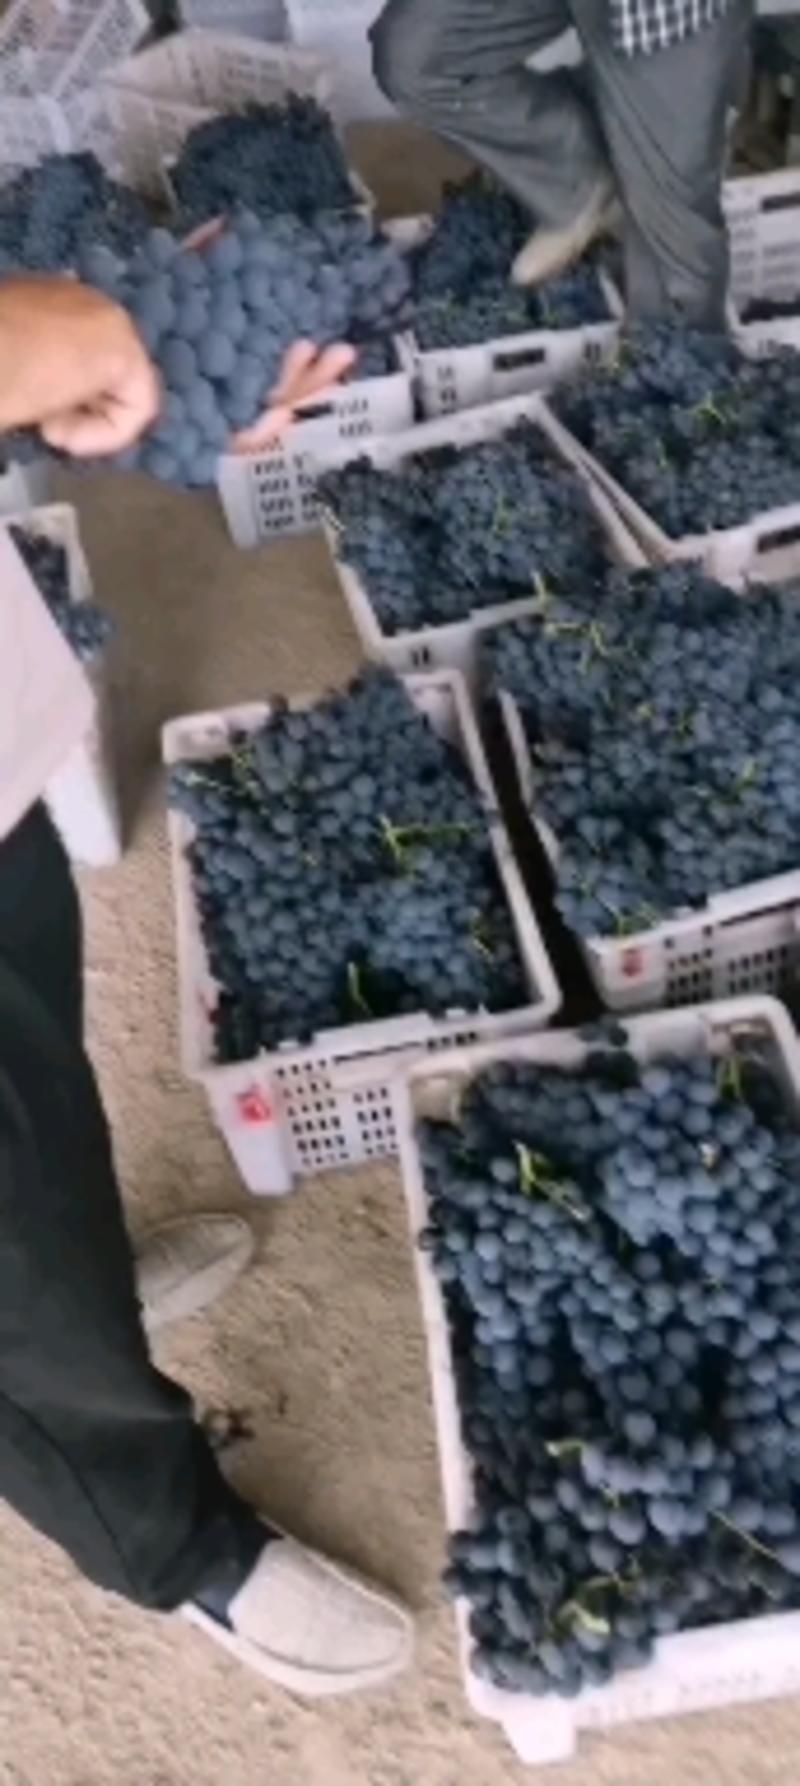 大美新疆的夏黒葡萄以大比量的下来了口感超好希望大家多多订